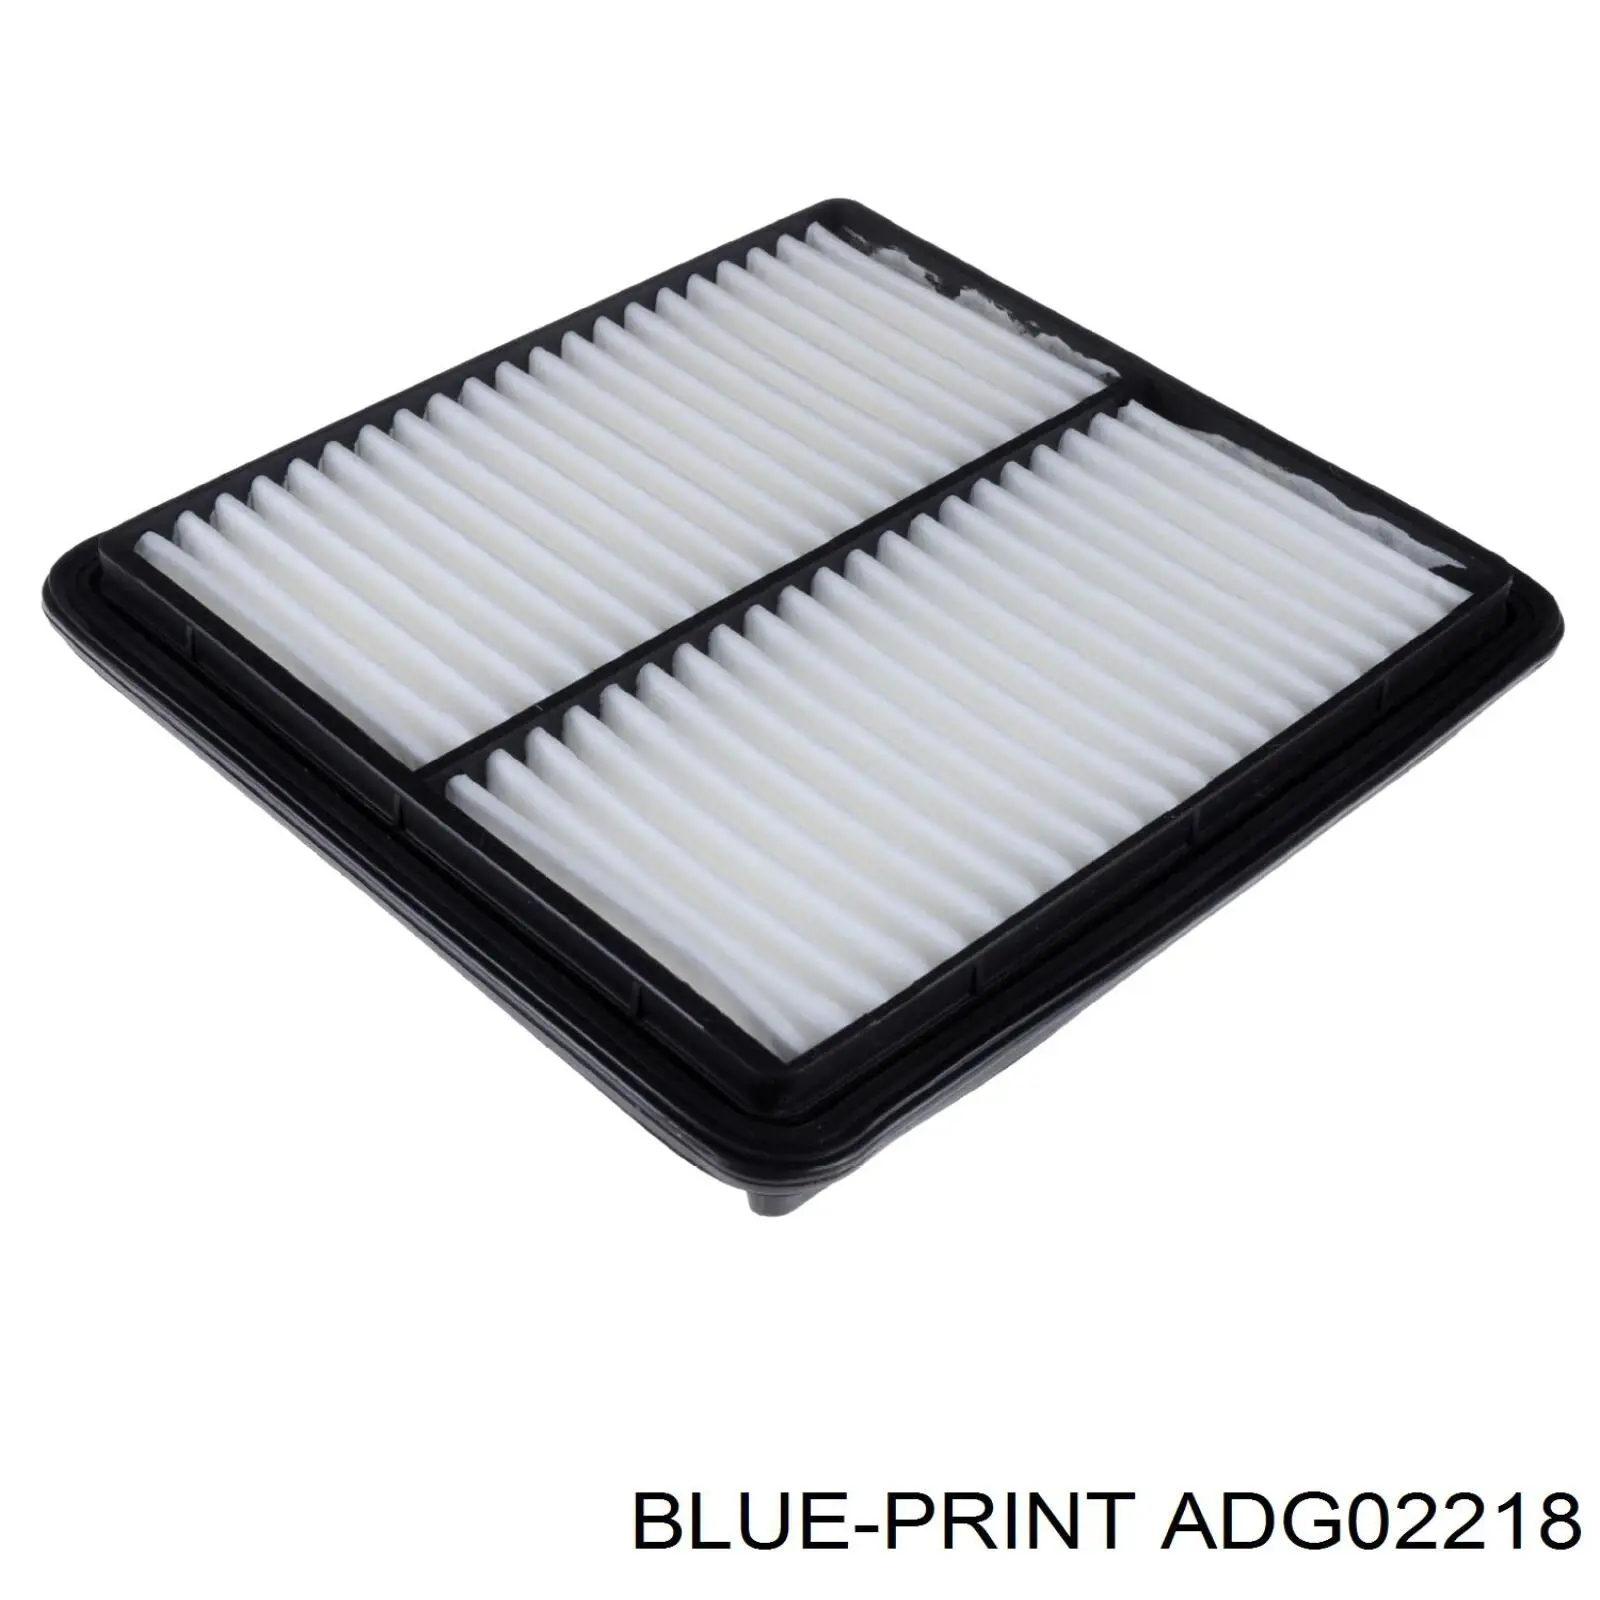 PC903 AC Delco filtro de aire